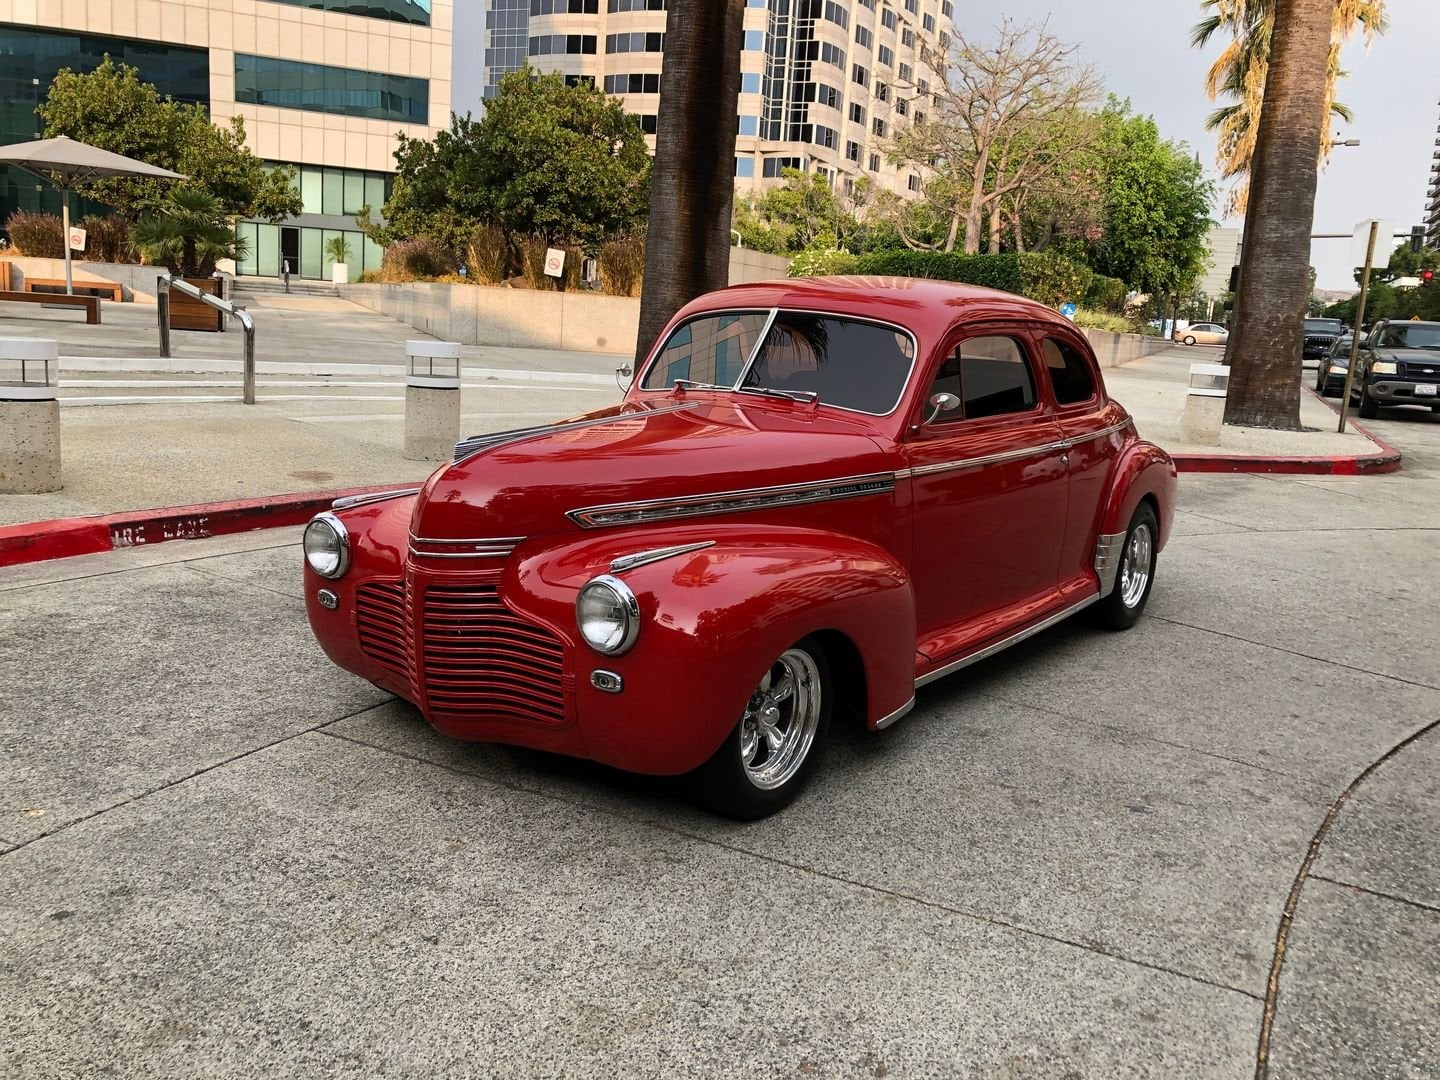 Chevrolet Special Deluxe 1941